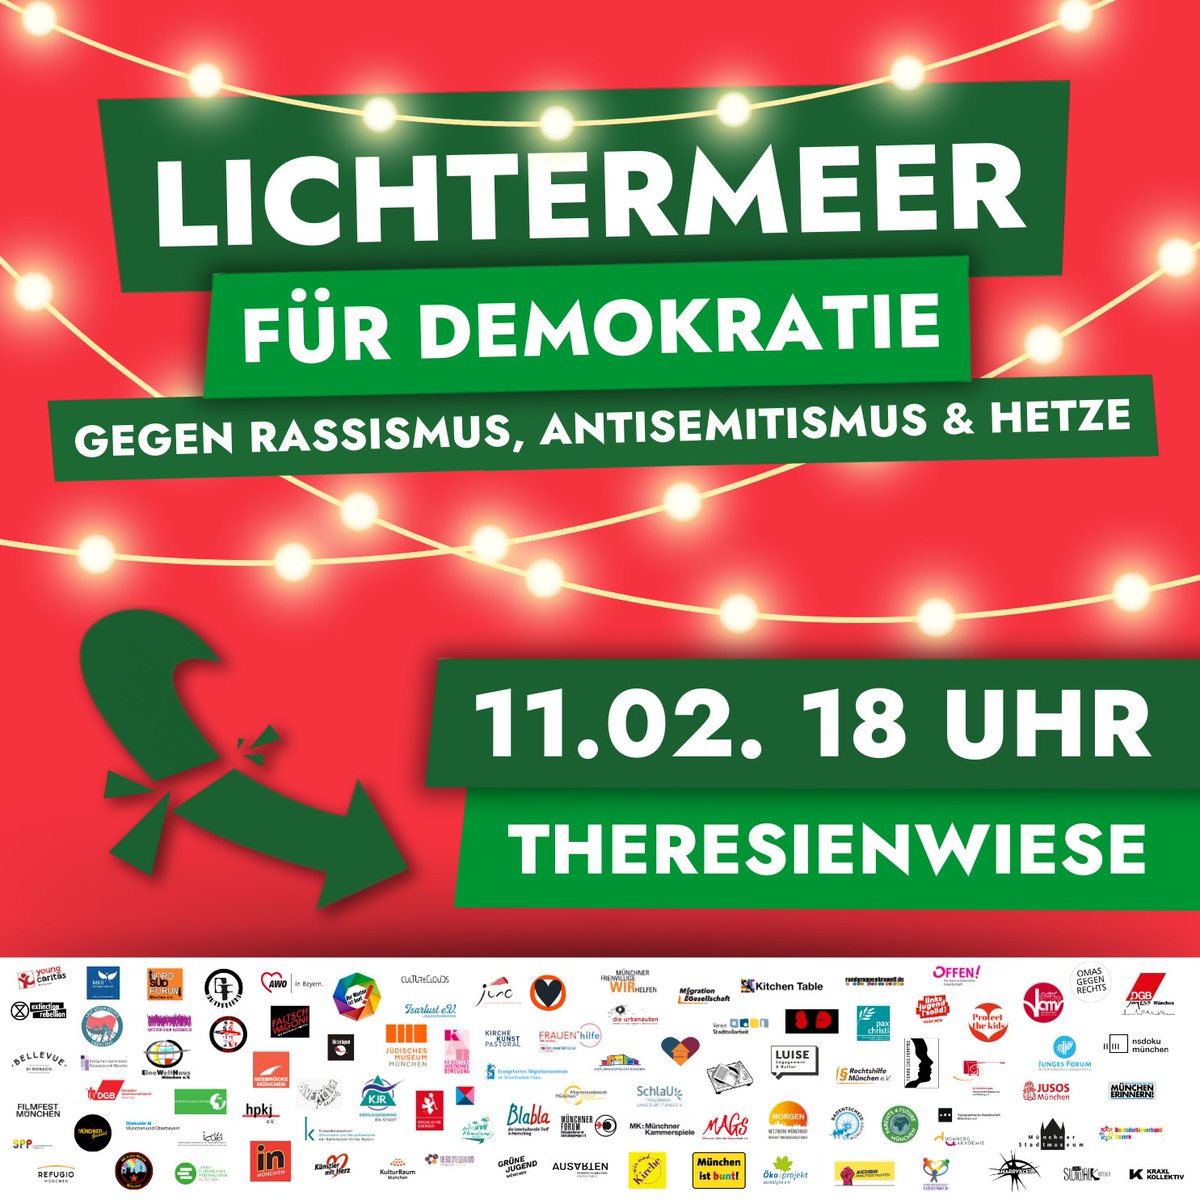 Aufstehen für unsere Demokratie! München setzt nach der Großdemo vom 21. Januar erneut ein Zeichen für Demokratie und Menschenrechte: Am 11. Februar um 18 Uhr bilden wir ein Meer aus Licht gegen das Dunkel von Hass und Hetze, Rassismus und Antisemitismus! #NieWiederIstJetzt